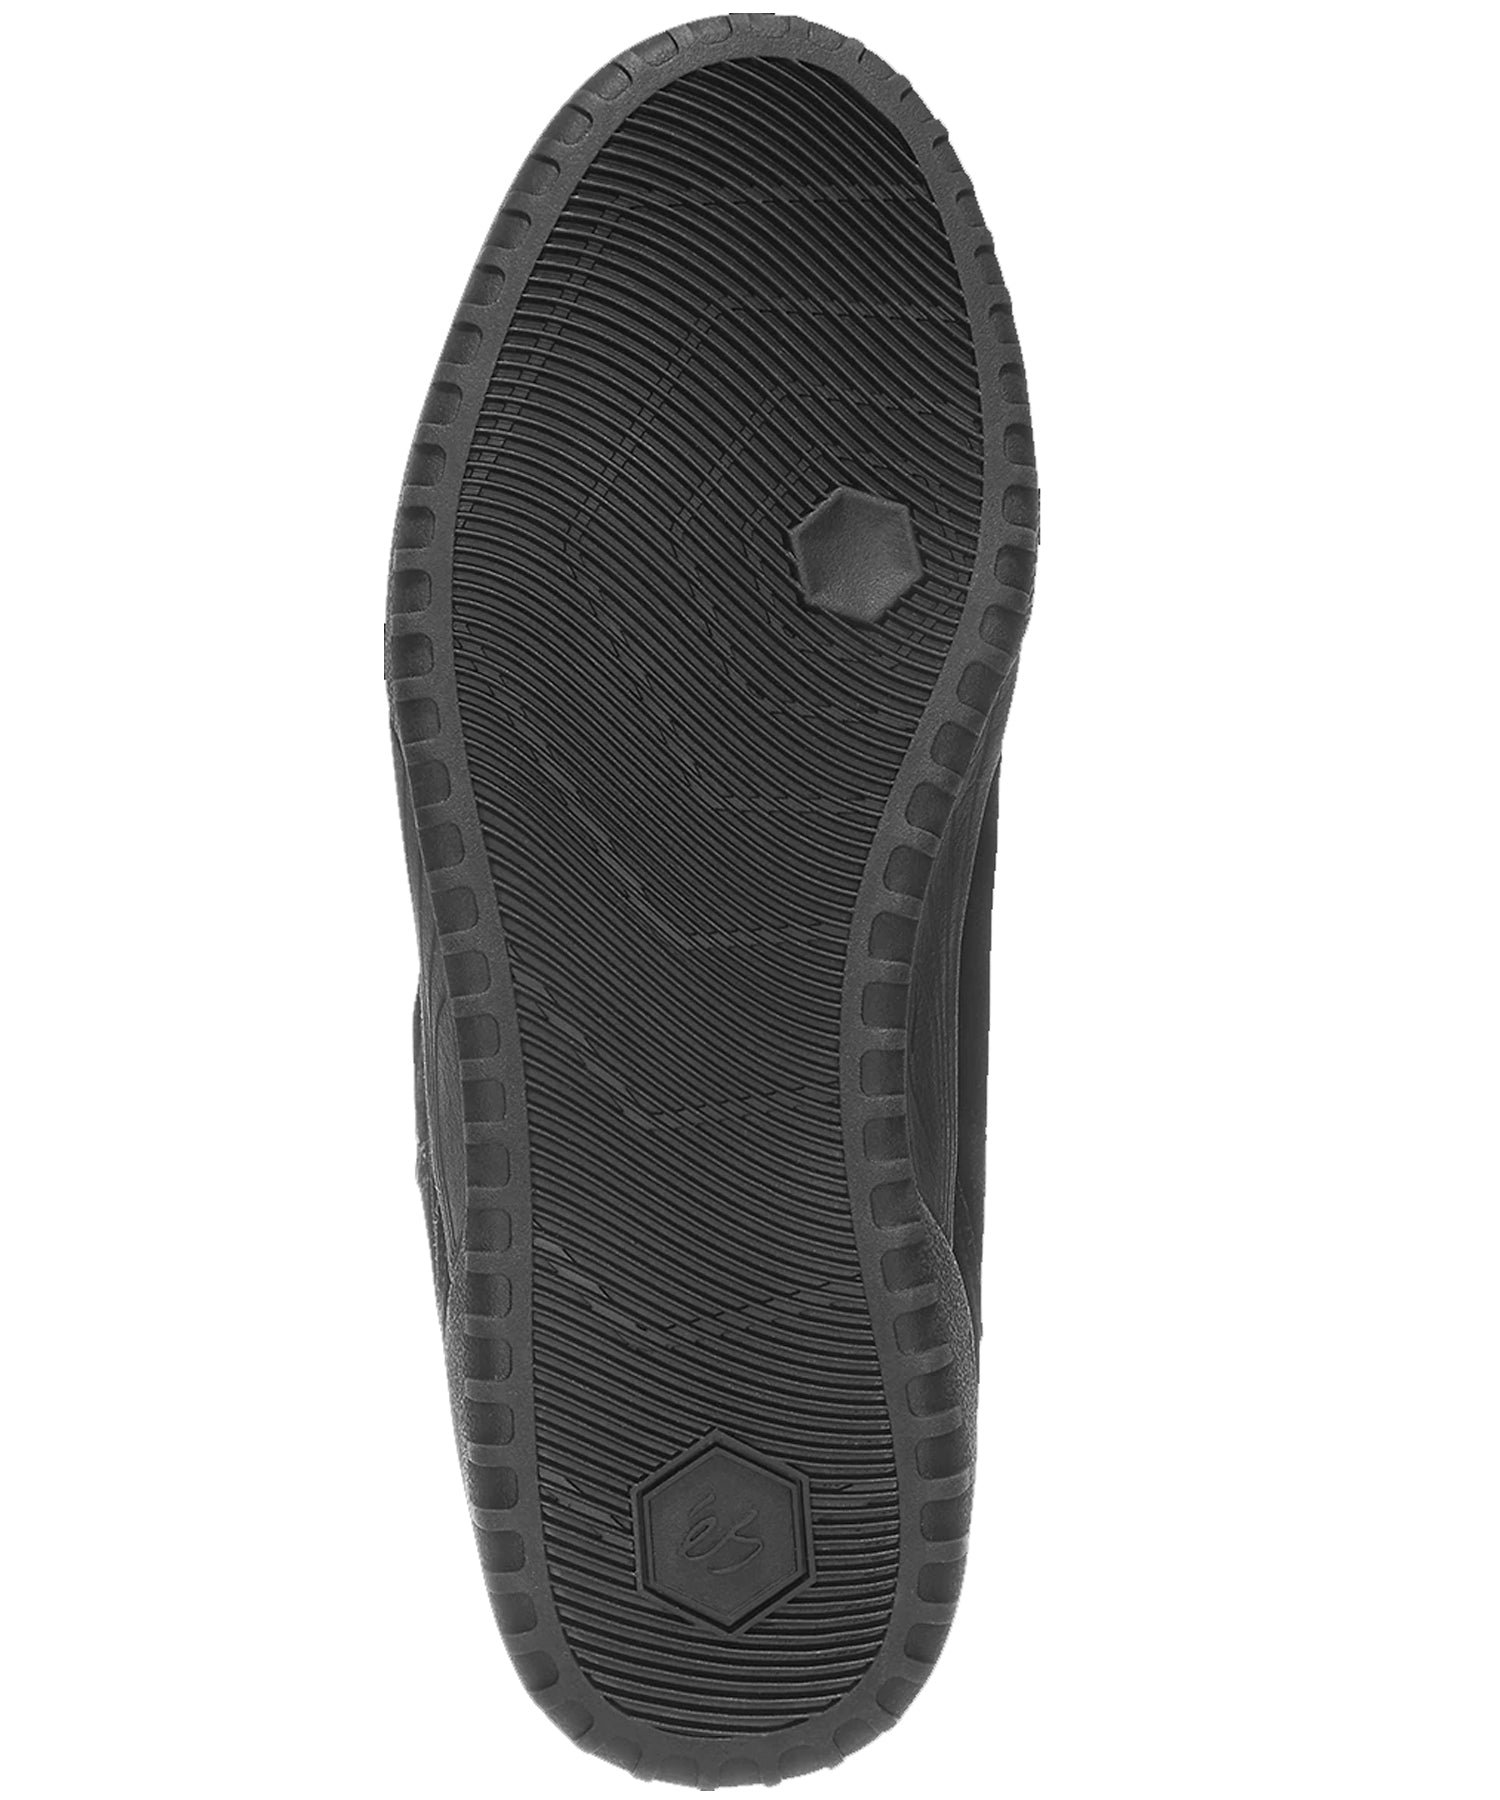 és-zapatillas-quatro-negro-la zapatilla de skate definitiva-suelas y lengüeta de espuma-Suela de goma sti energy foam.